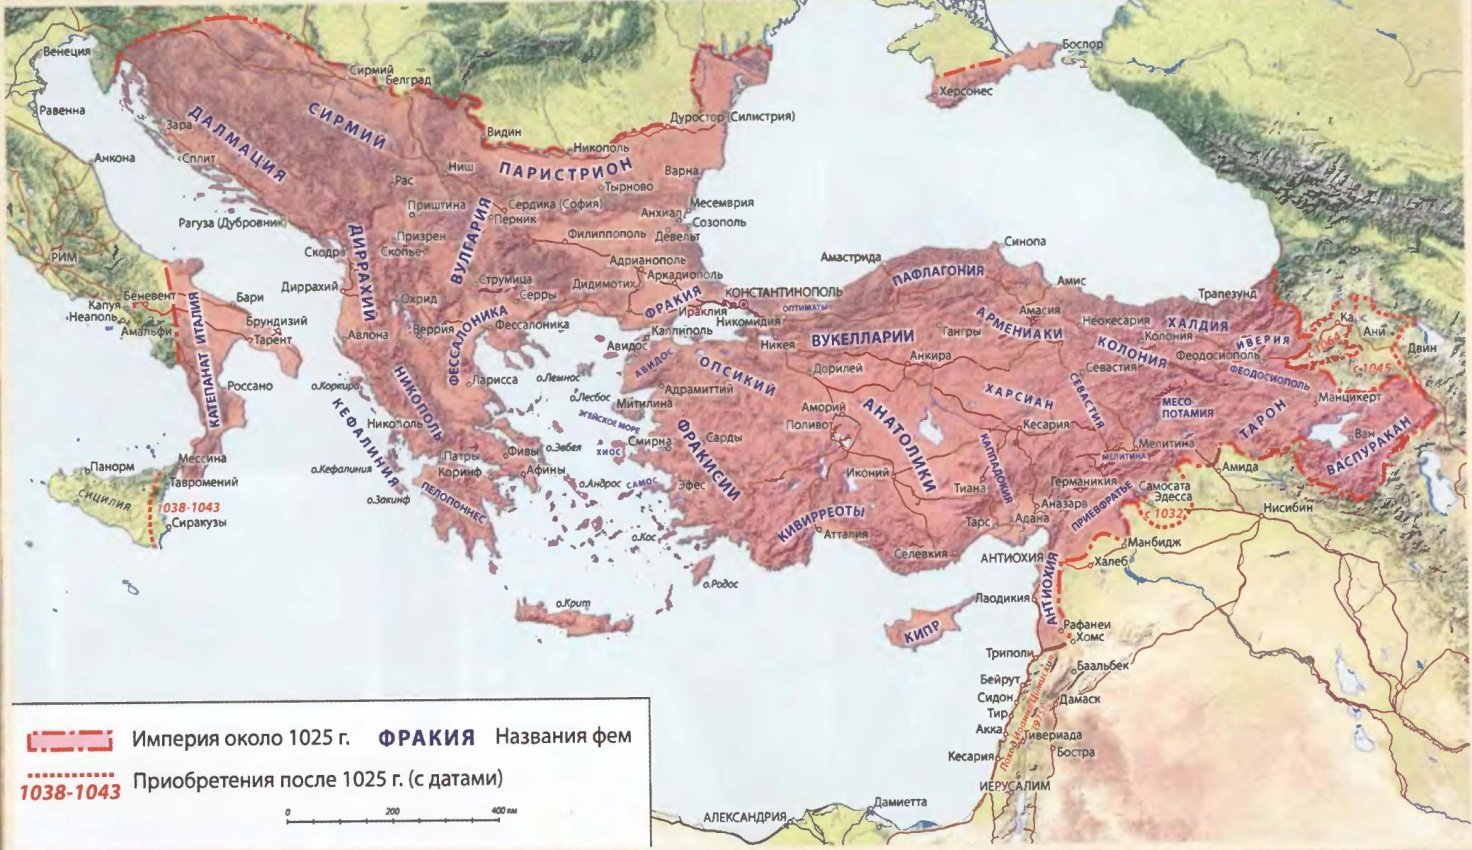 Где византия на карте. Византийская Империя карта 11 века. Византийская Империя 12 век карта. Византийская Империя в 10 веке карта. Византийская Империя в 11 веке карта.